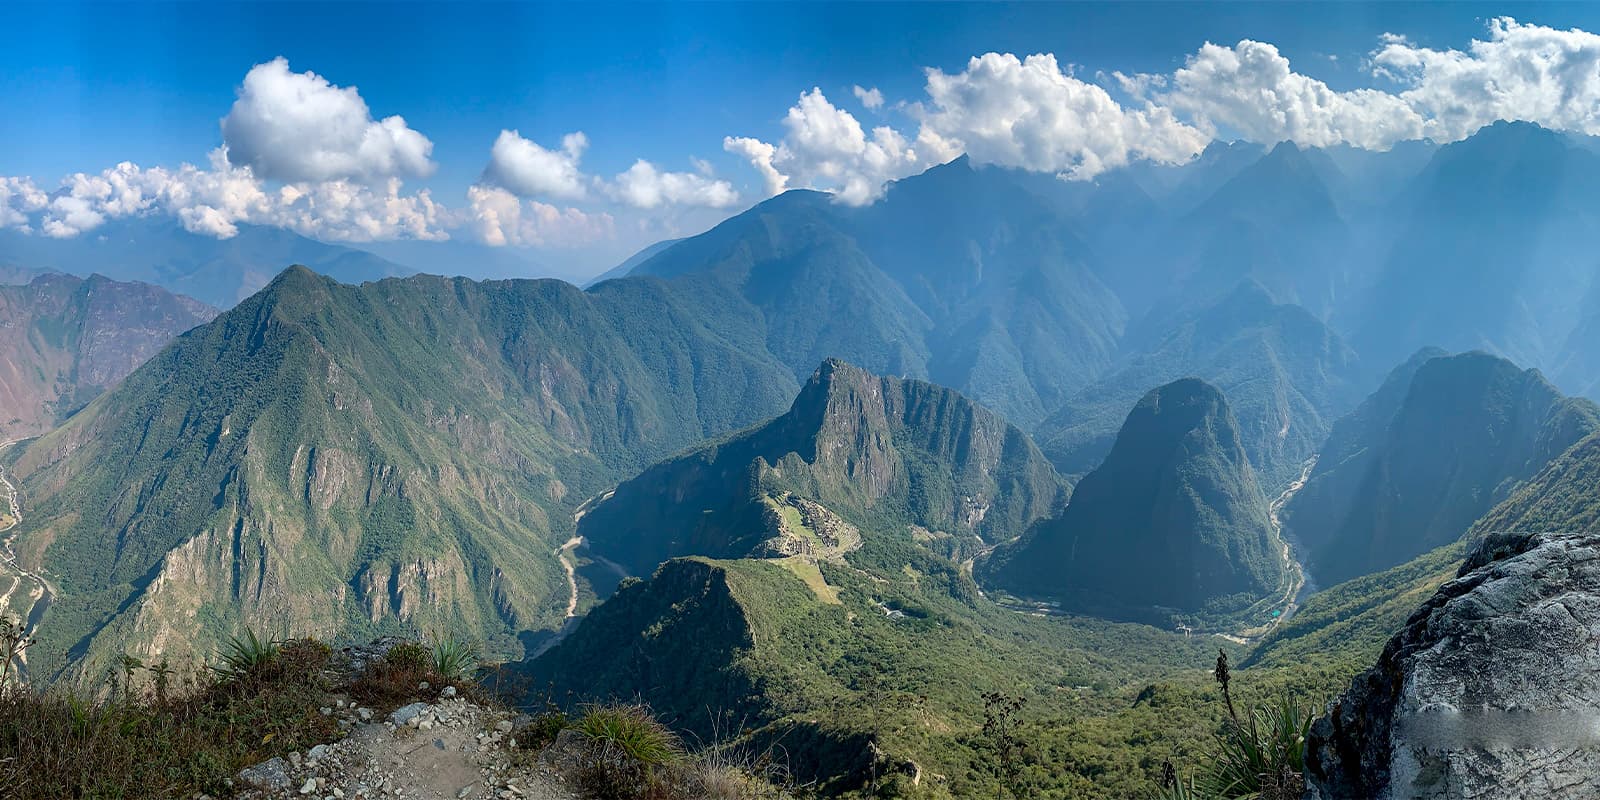 Macchu Picchu Mountain